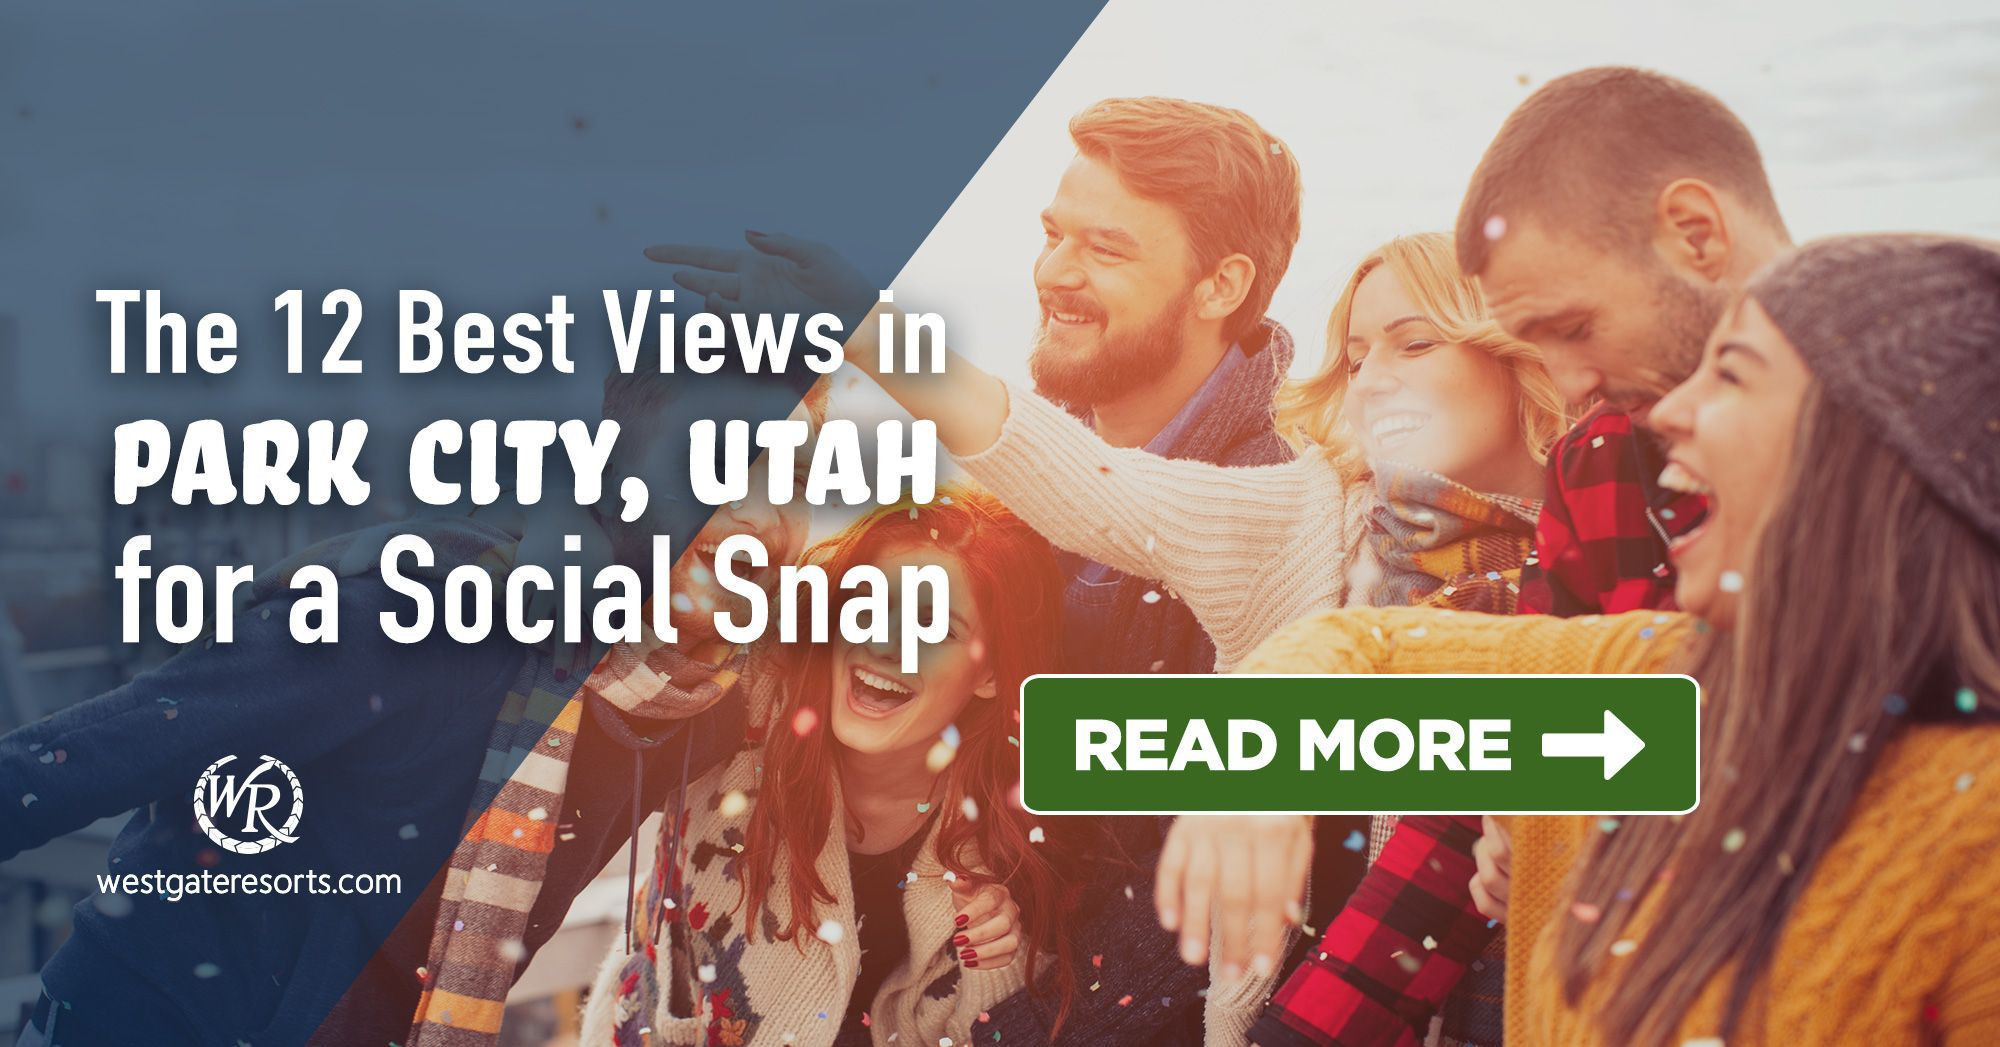 Diez cosas que hacer en Park City Utah en invierno sin gastar un centavo